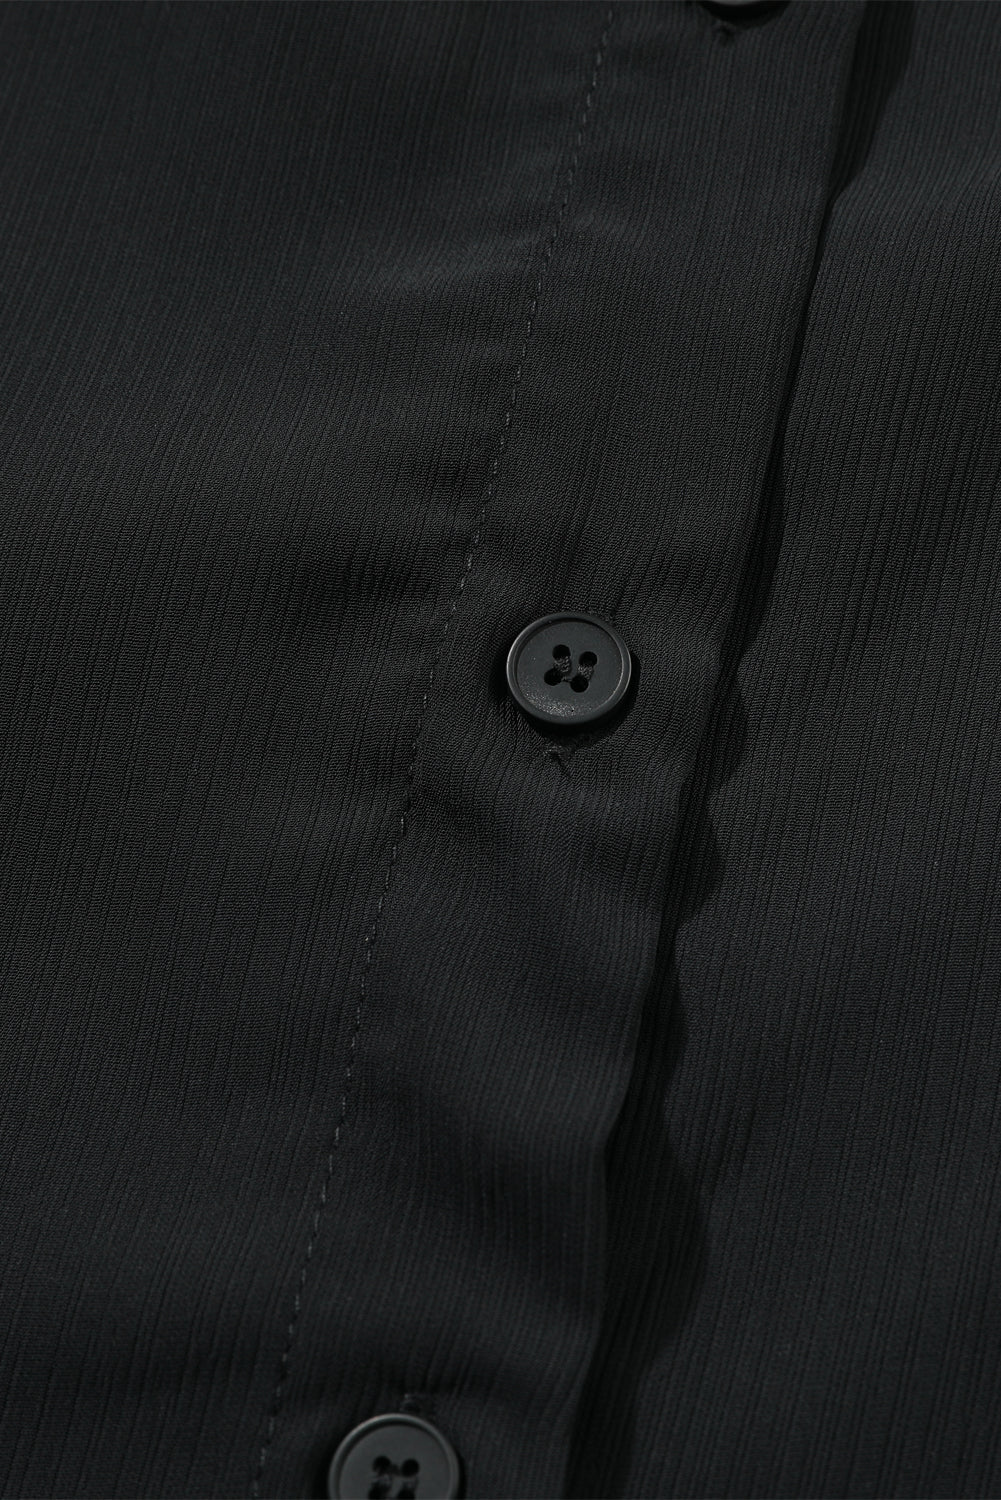 Črna večplastna bluza z naborki in gumbi velike velikosti